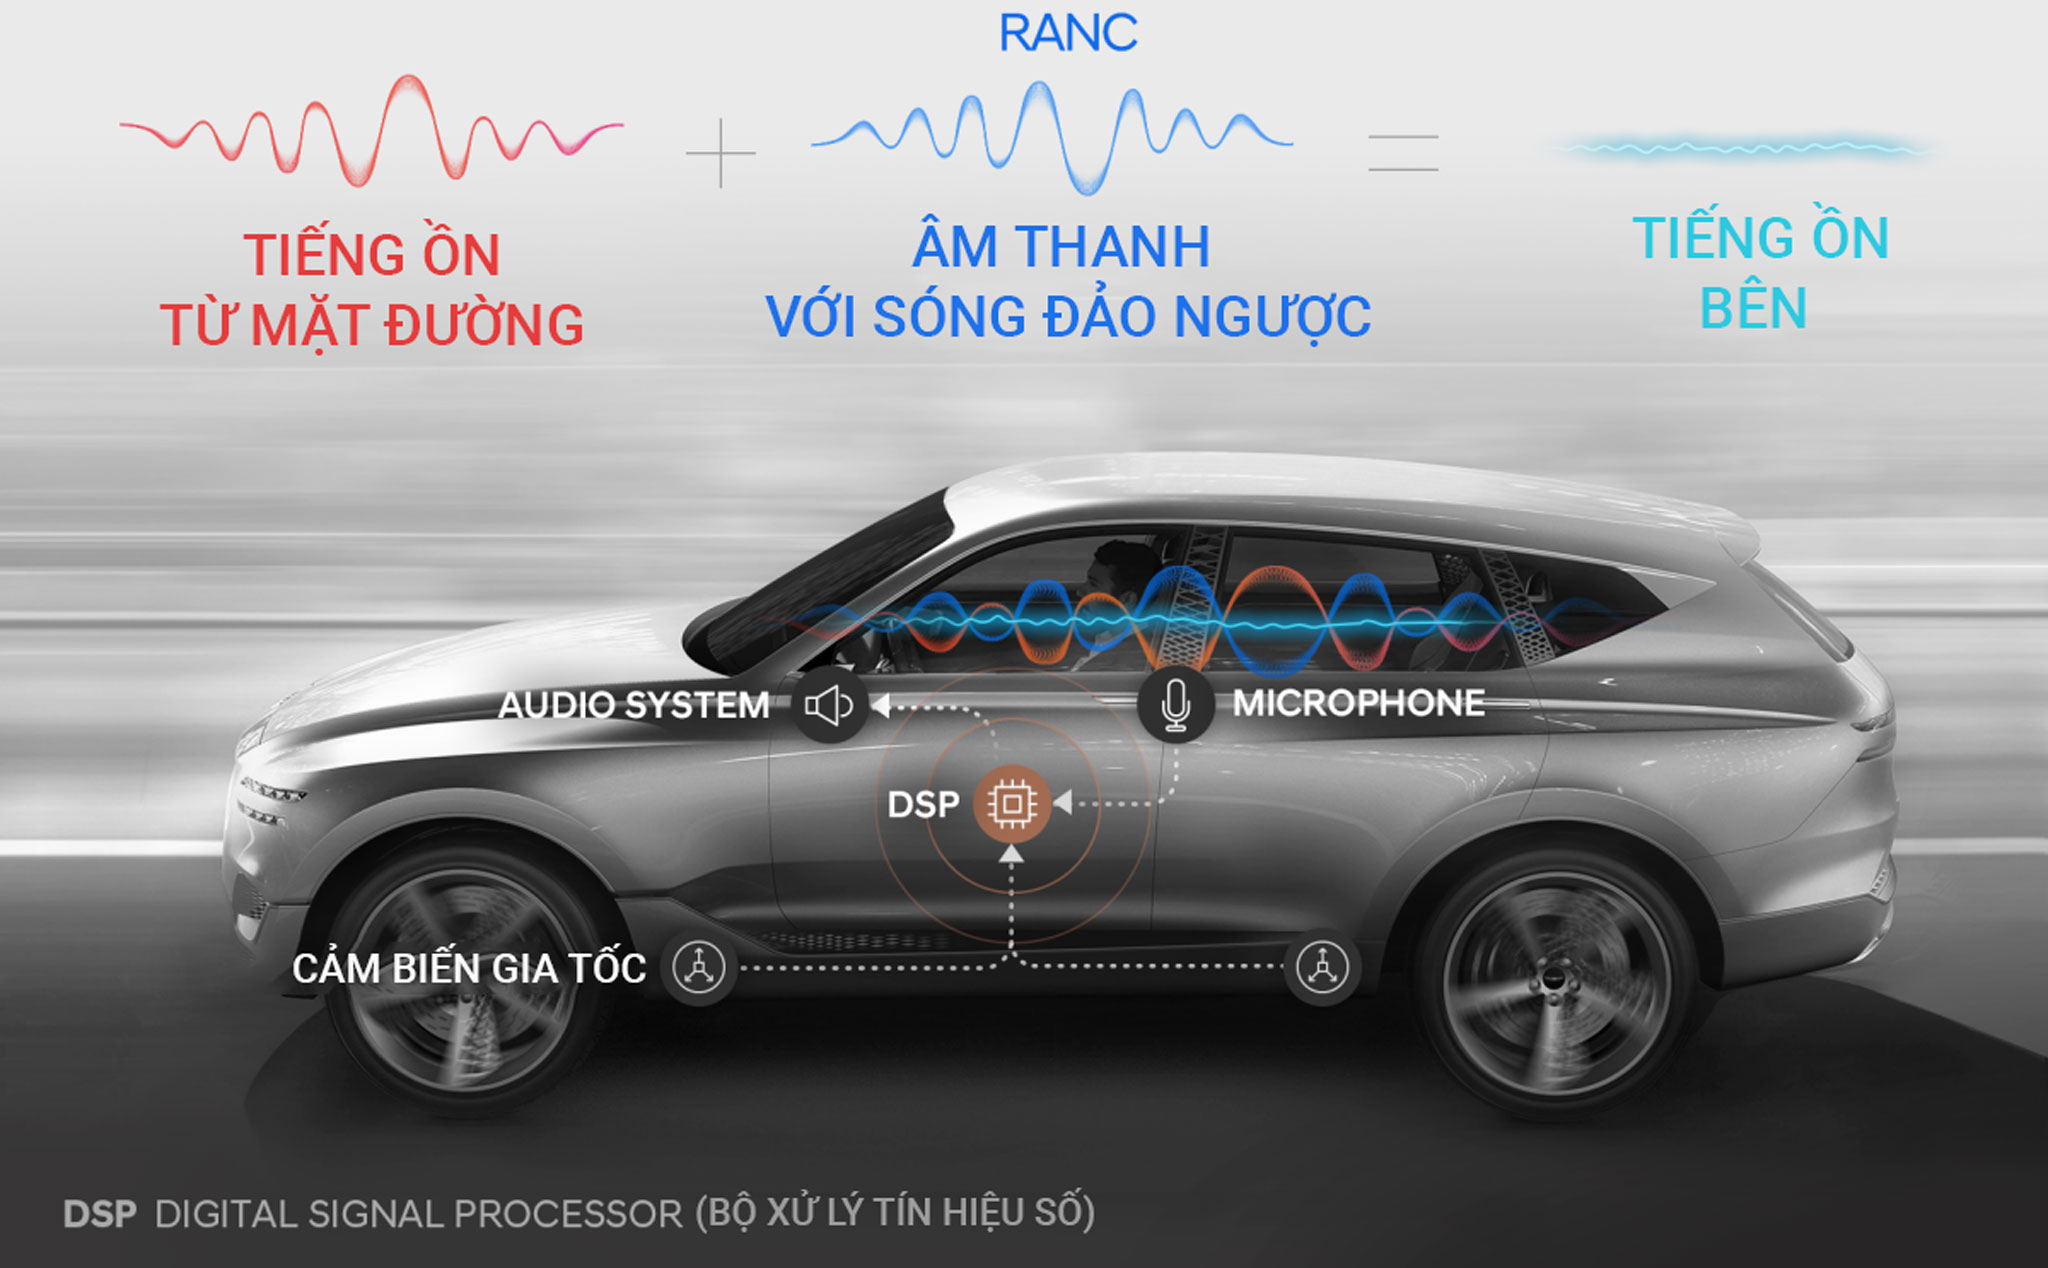 Hyundai đang phát triển công nghệ giúp triệt tiêu tiếng ồn vọng lên từ mặt đường